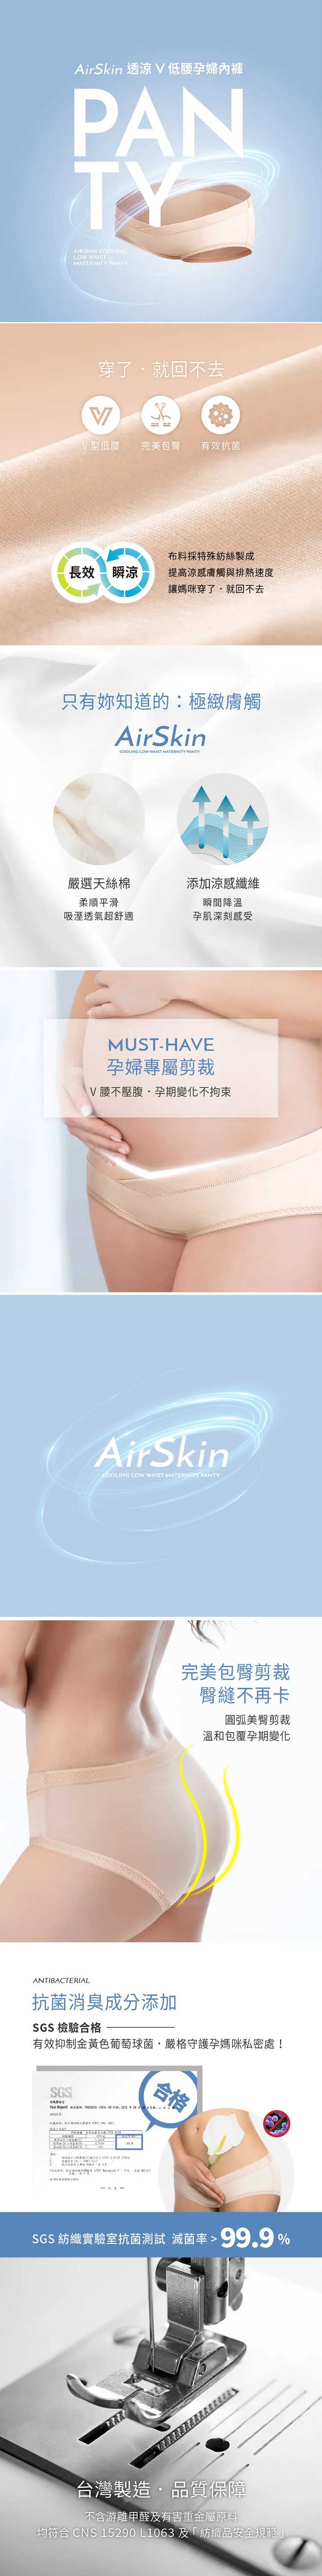 六甲村 AirSkin 低腰V型薄透涼孕婦內褲